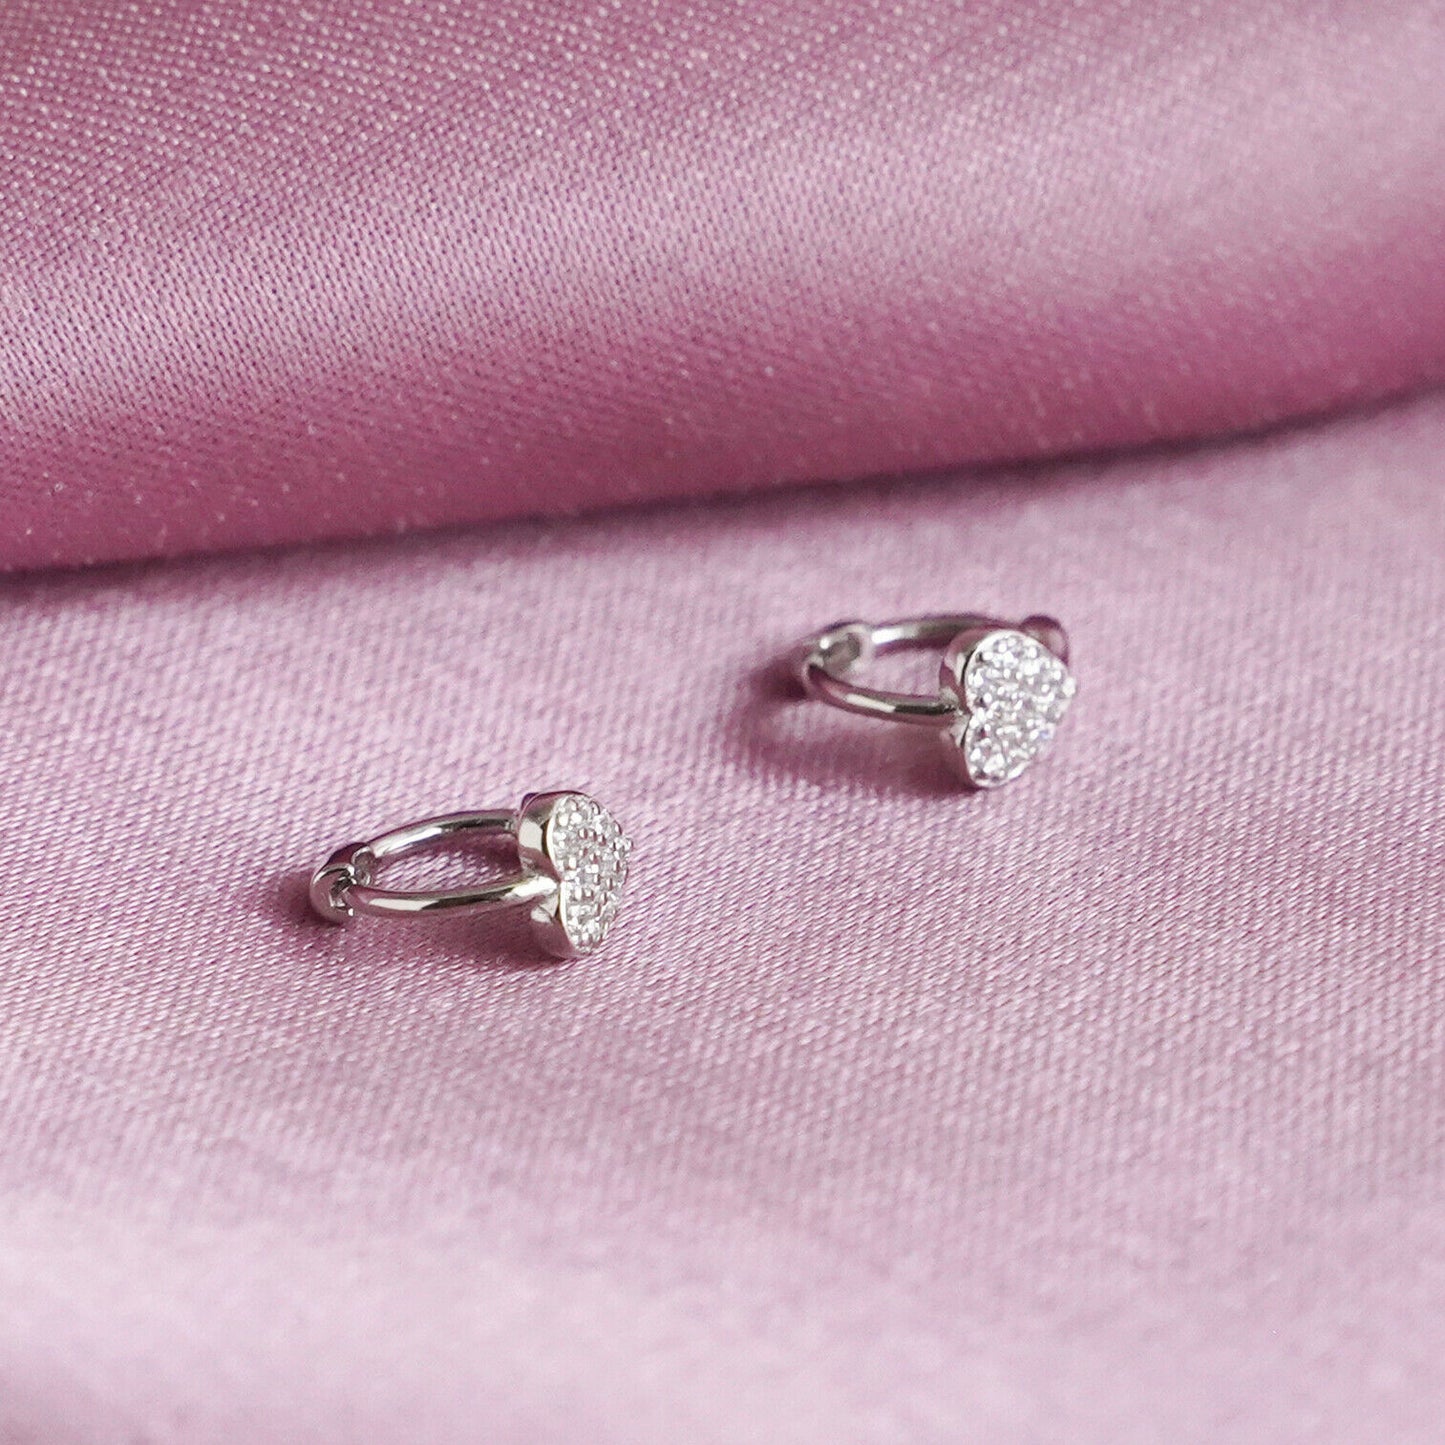 6mm Sterling Silver Heart Huggie Cuff Earrings with Paved CZ - sugarkittenlondon